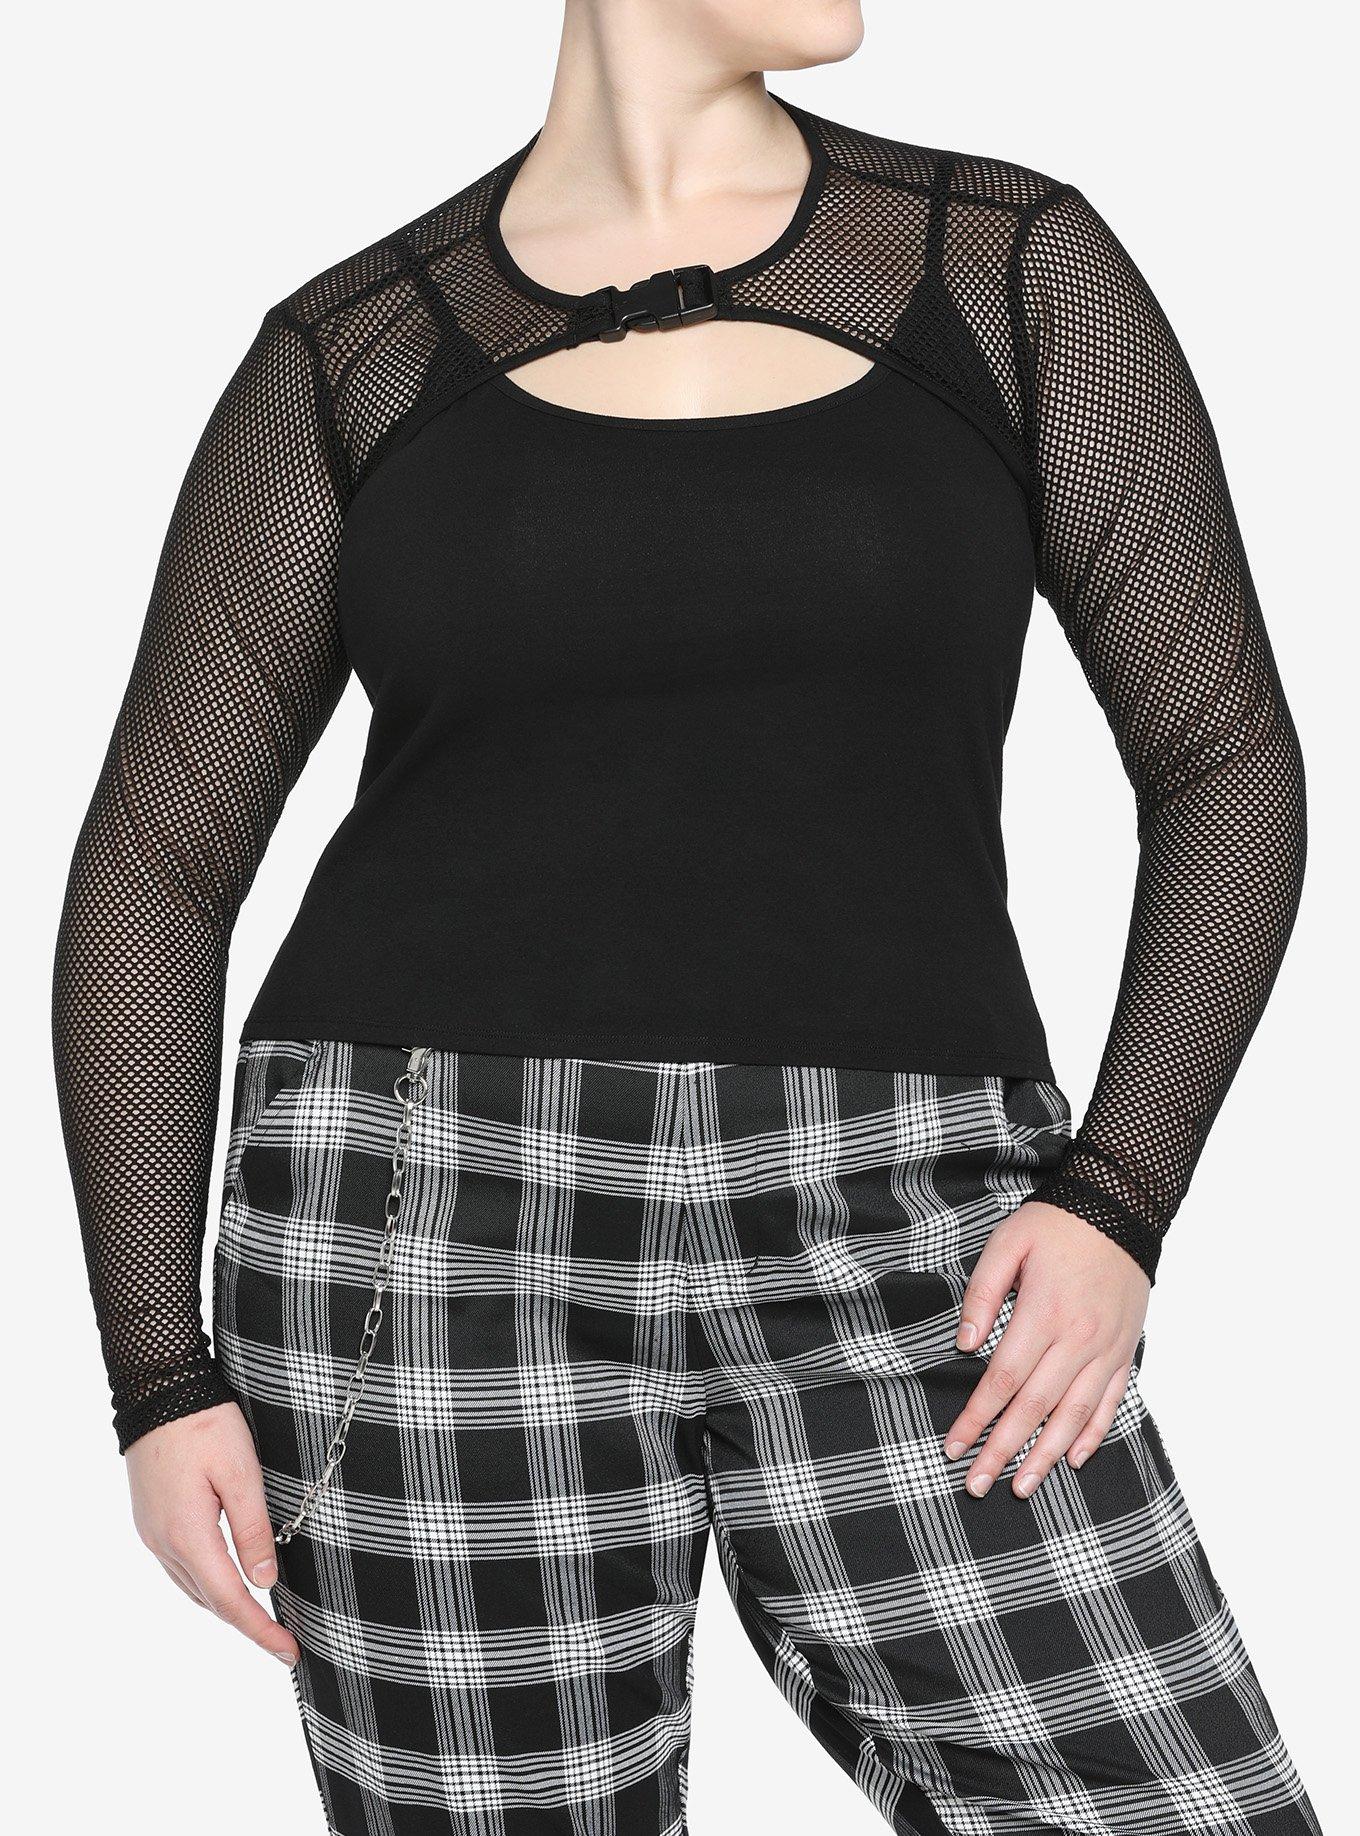 Black Fishnet Buckle Twofer Girls Top Plus Size, BLACK, hi-res